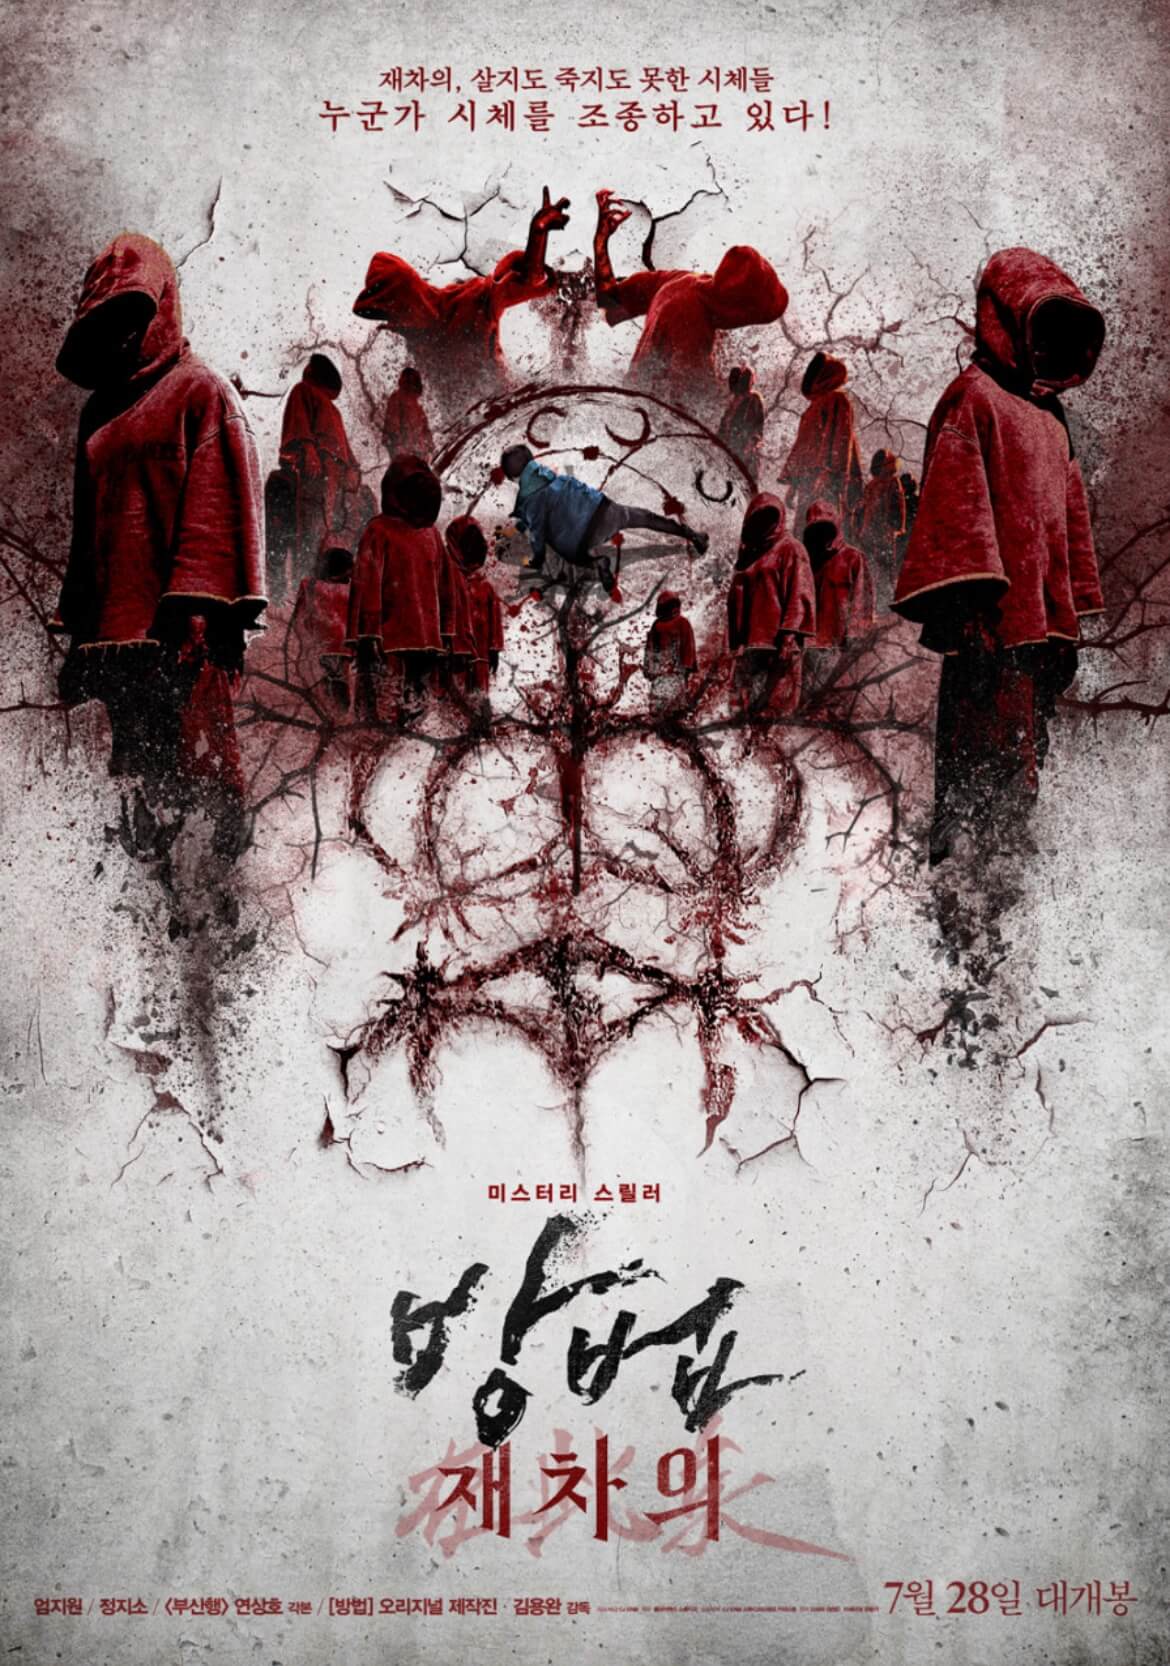 한국 공포 미스터리 오컬트 영화 '방법: 재차의'